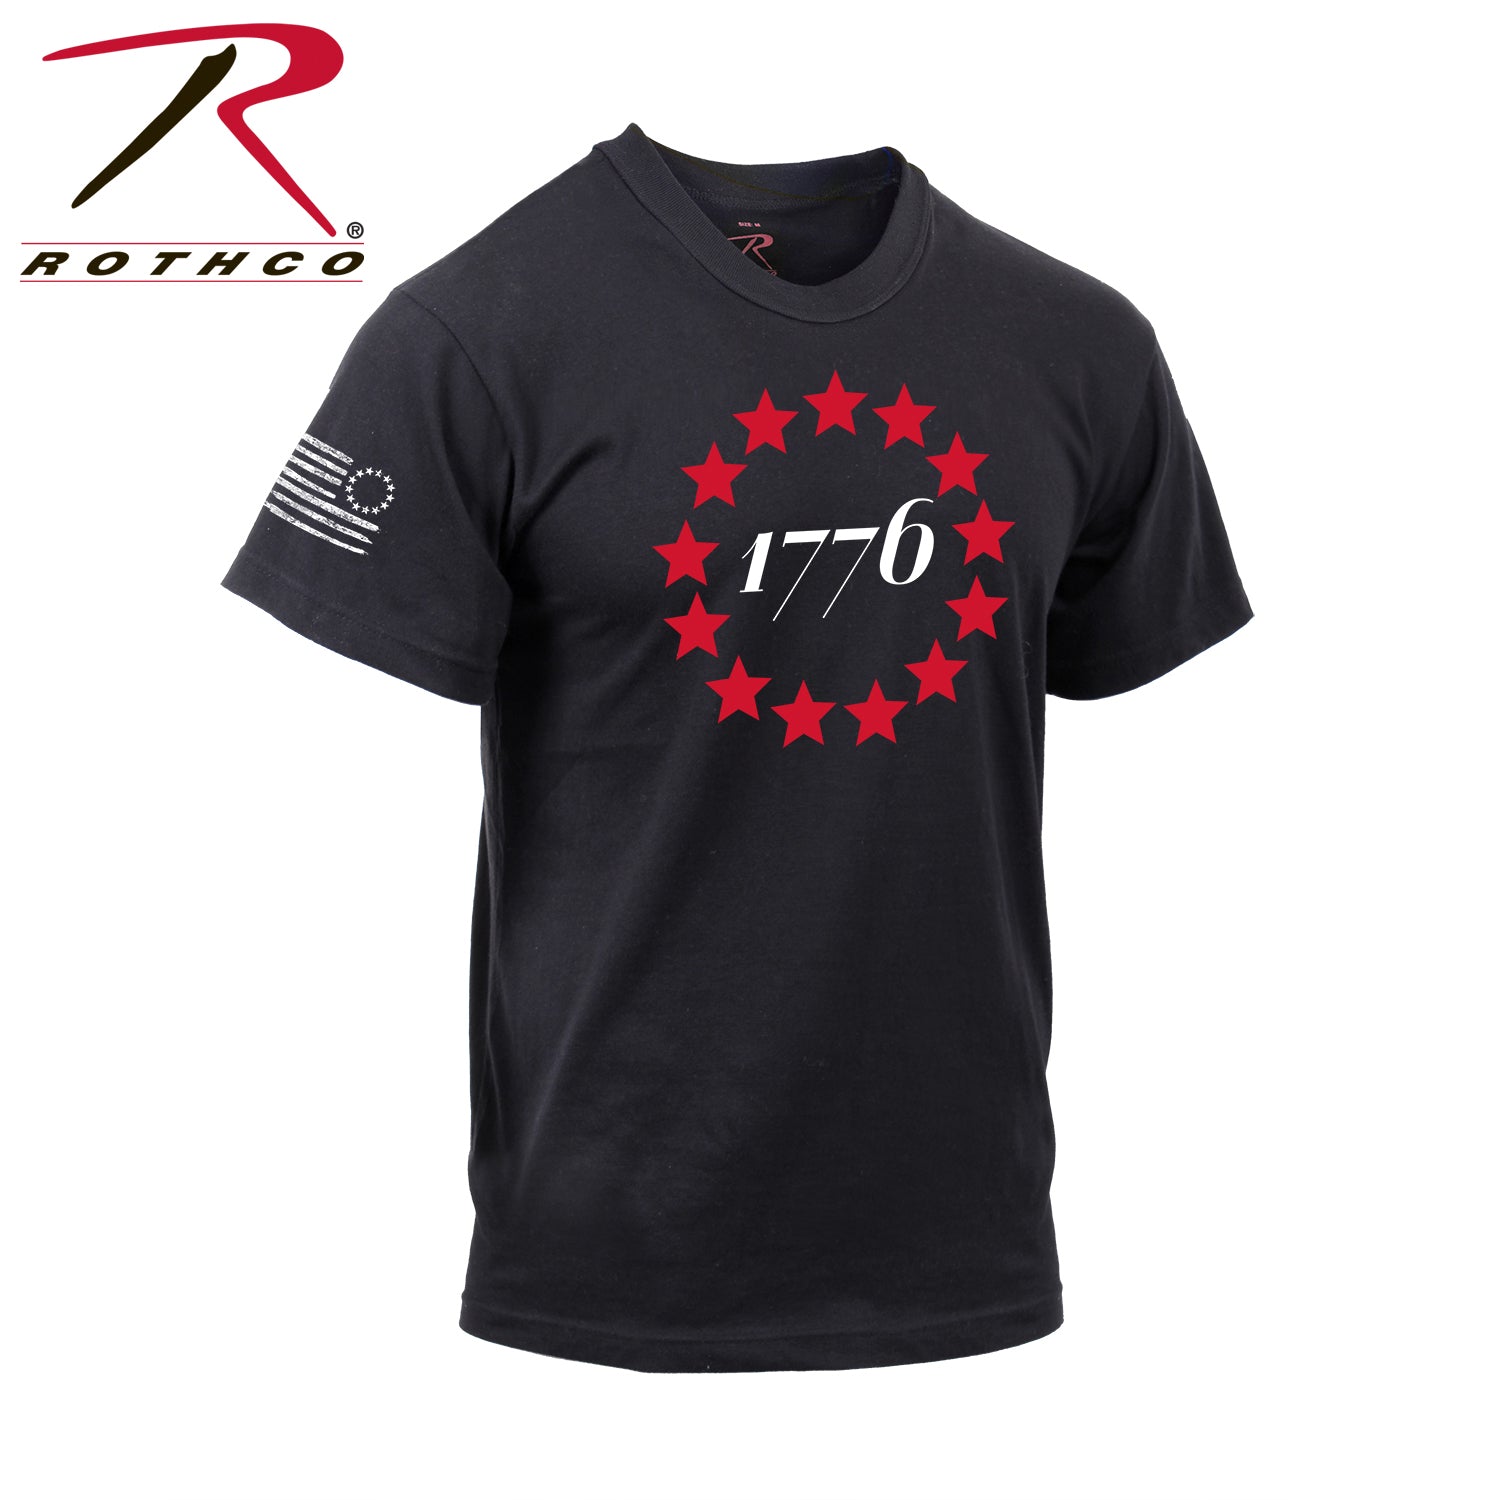 Rothco 1776 T-Shirt